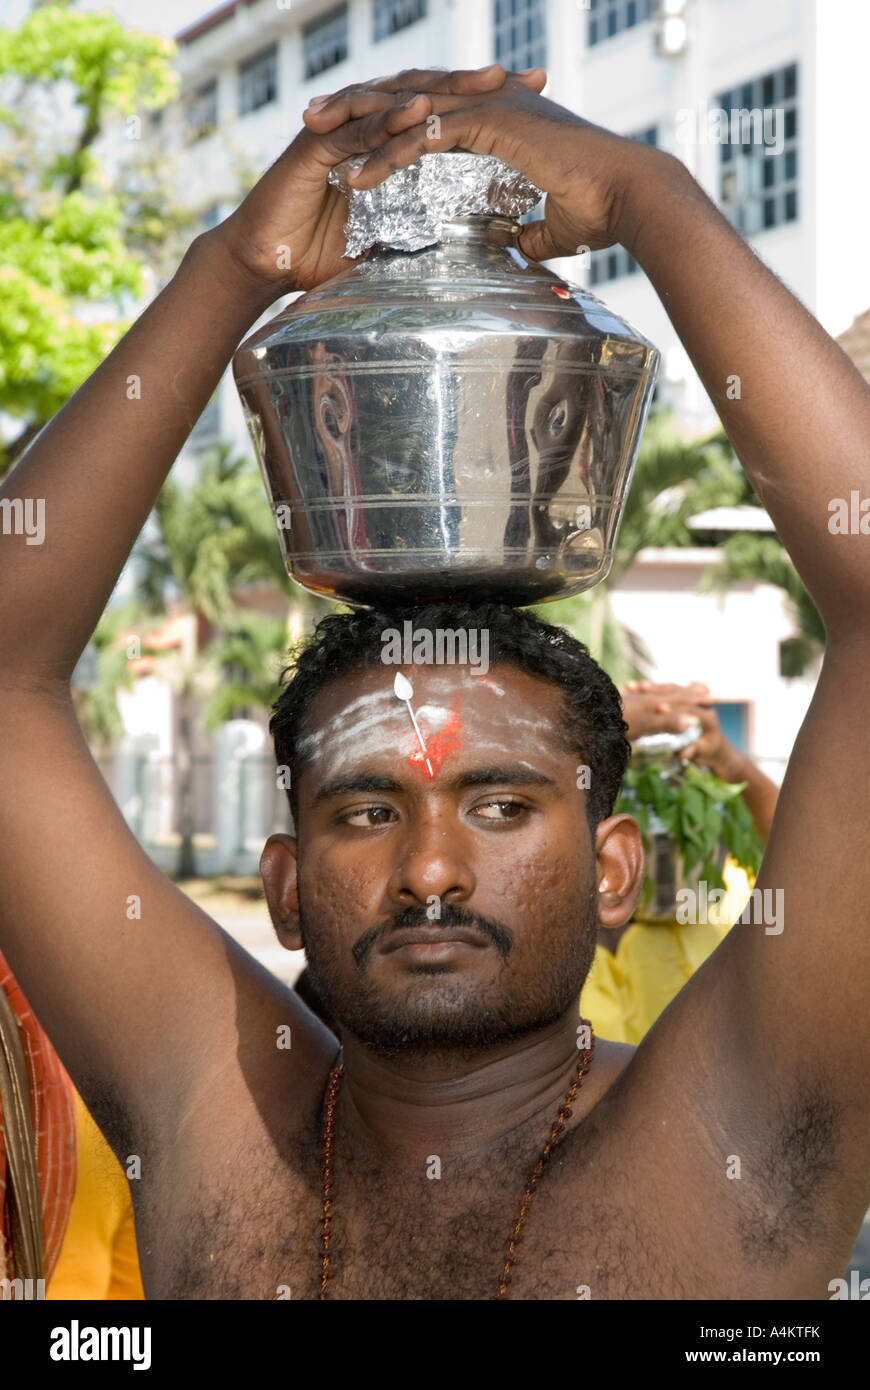 Anhänger des Lord Murugan tragen Töpfe mit Milch, während die malaysischen Indianer Thaipusam in Georgetown Penang feiern Stockfoto